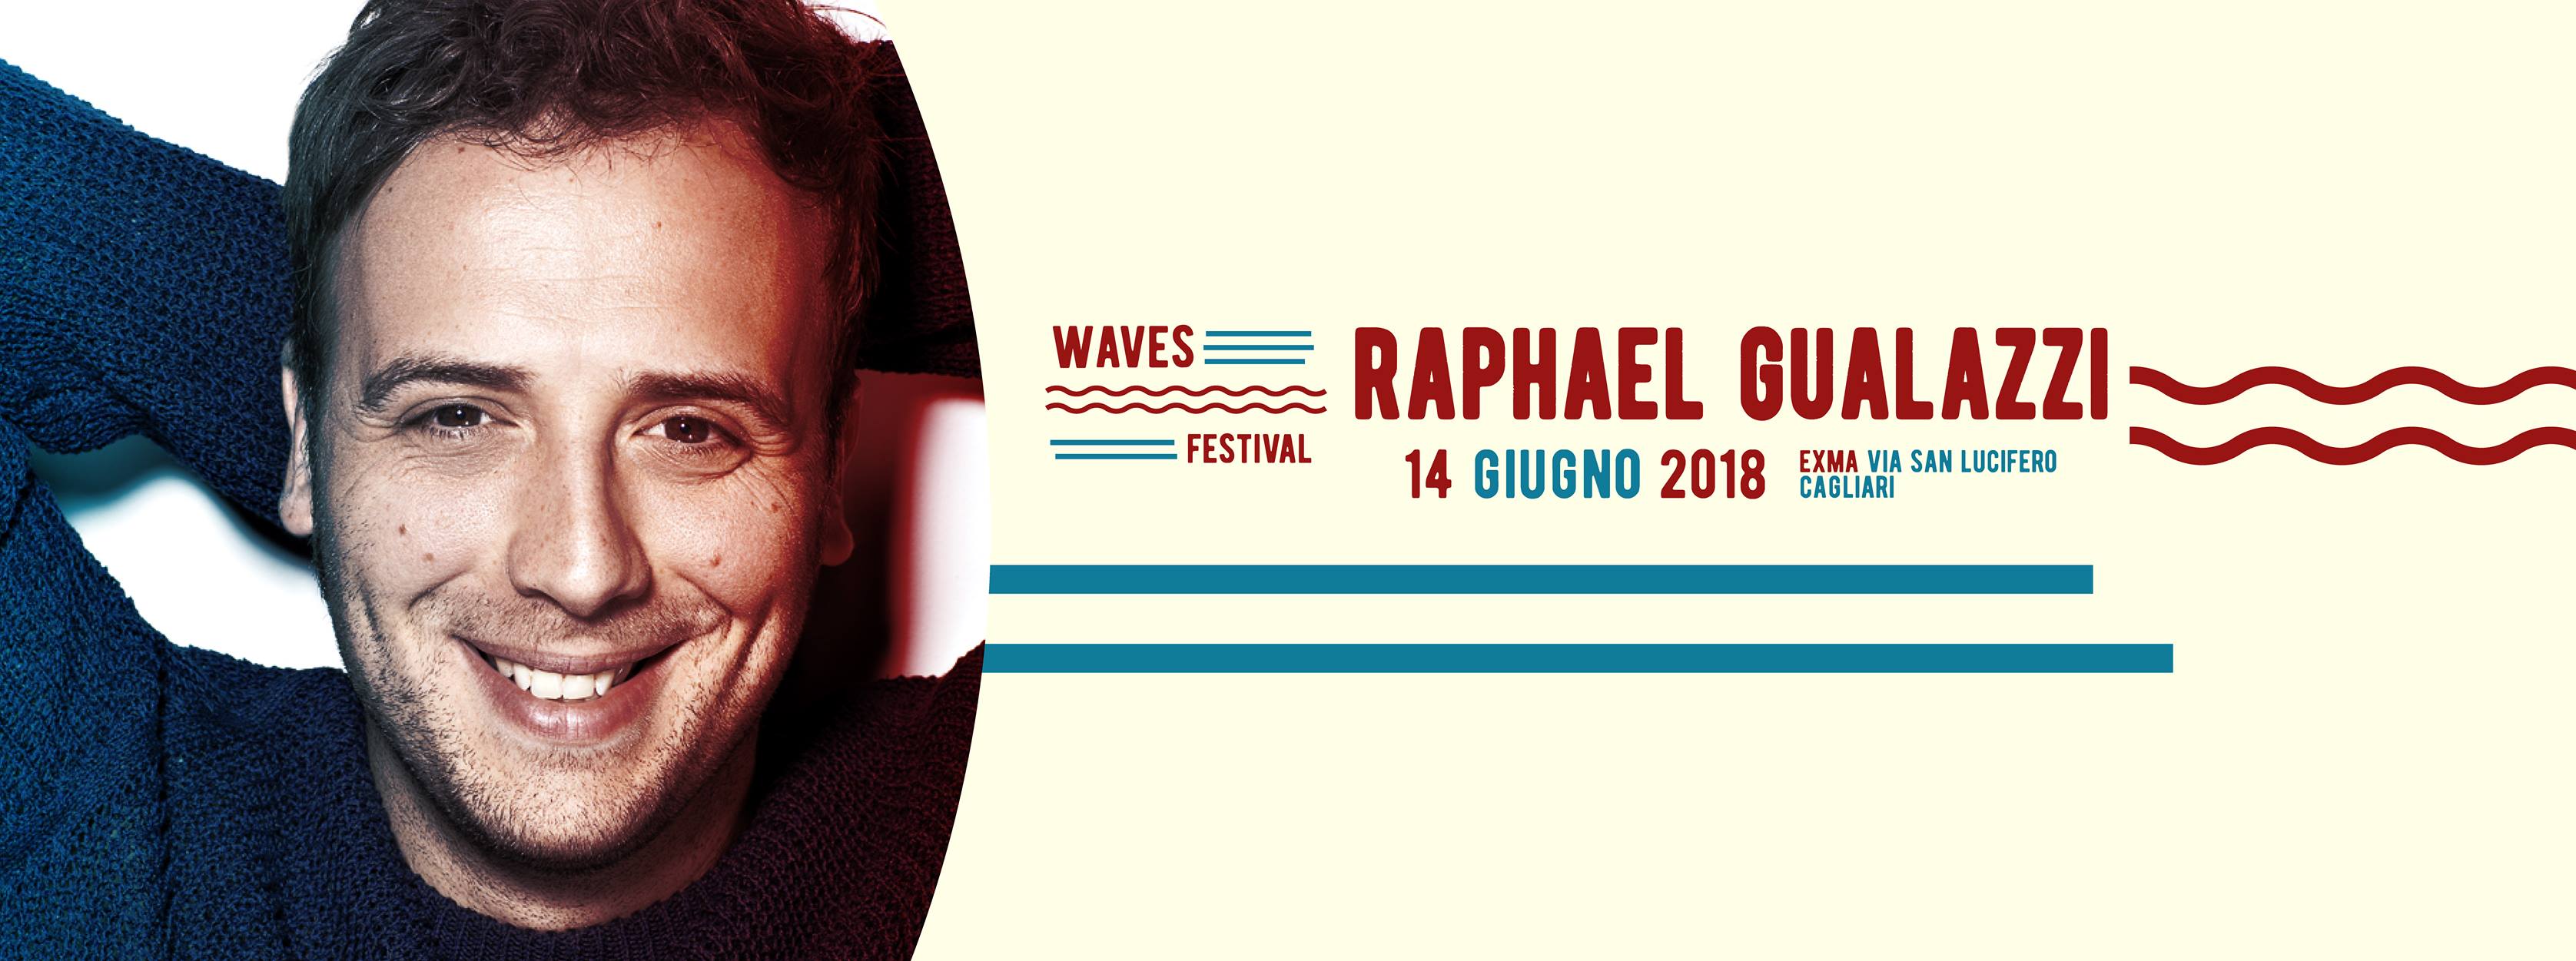 CAGLIARI |Raphael Gualazzi in concerto